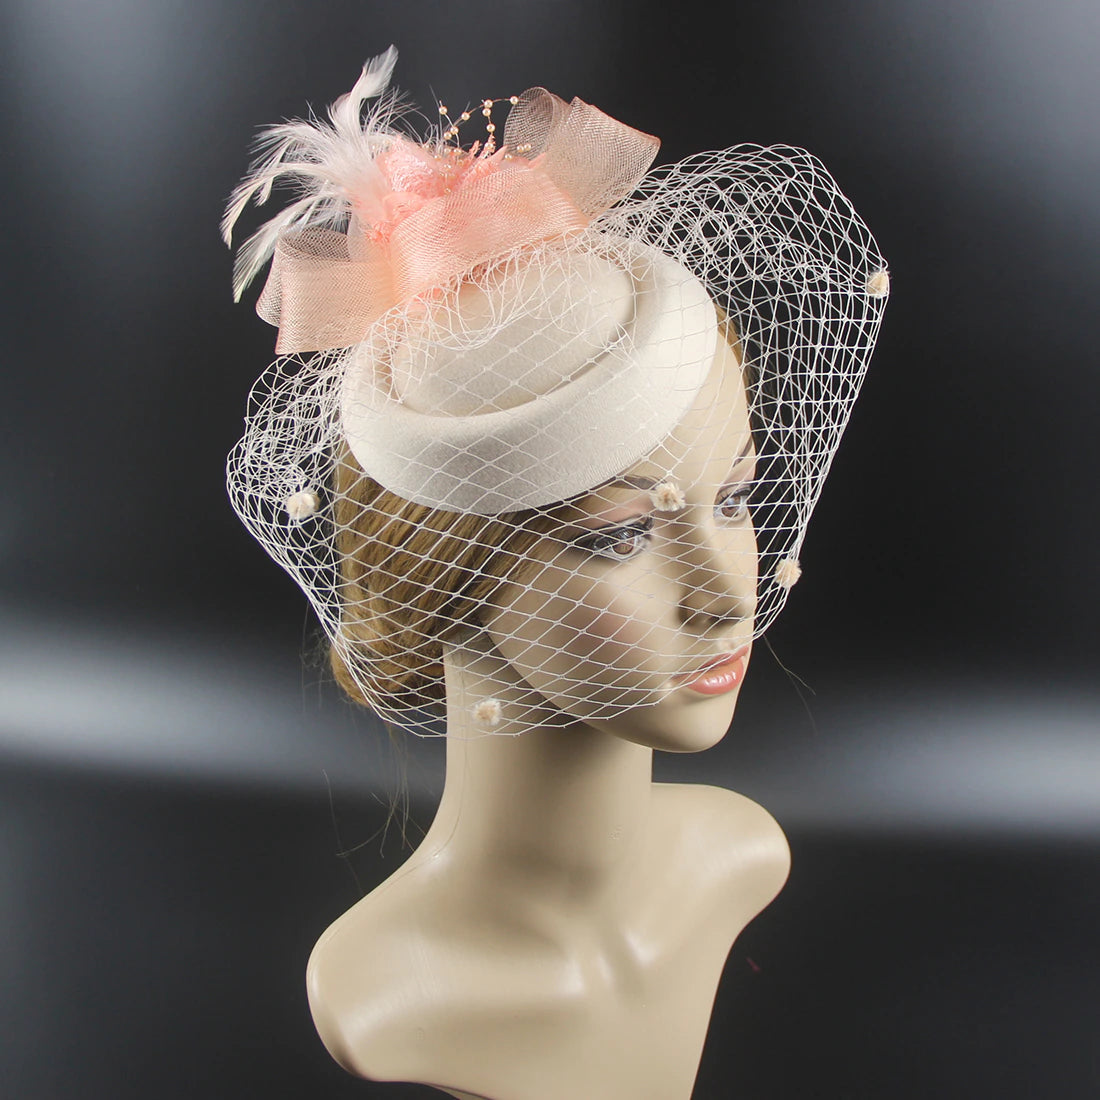 Women Pillbox Hat Polka Dot Veil Vintage Fascinators Tea Party Bridal Wedding Halloween Headband Hat jehouze 